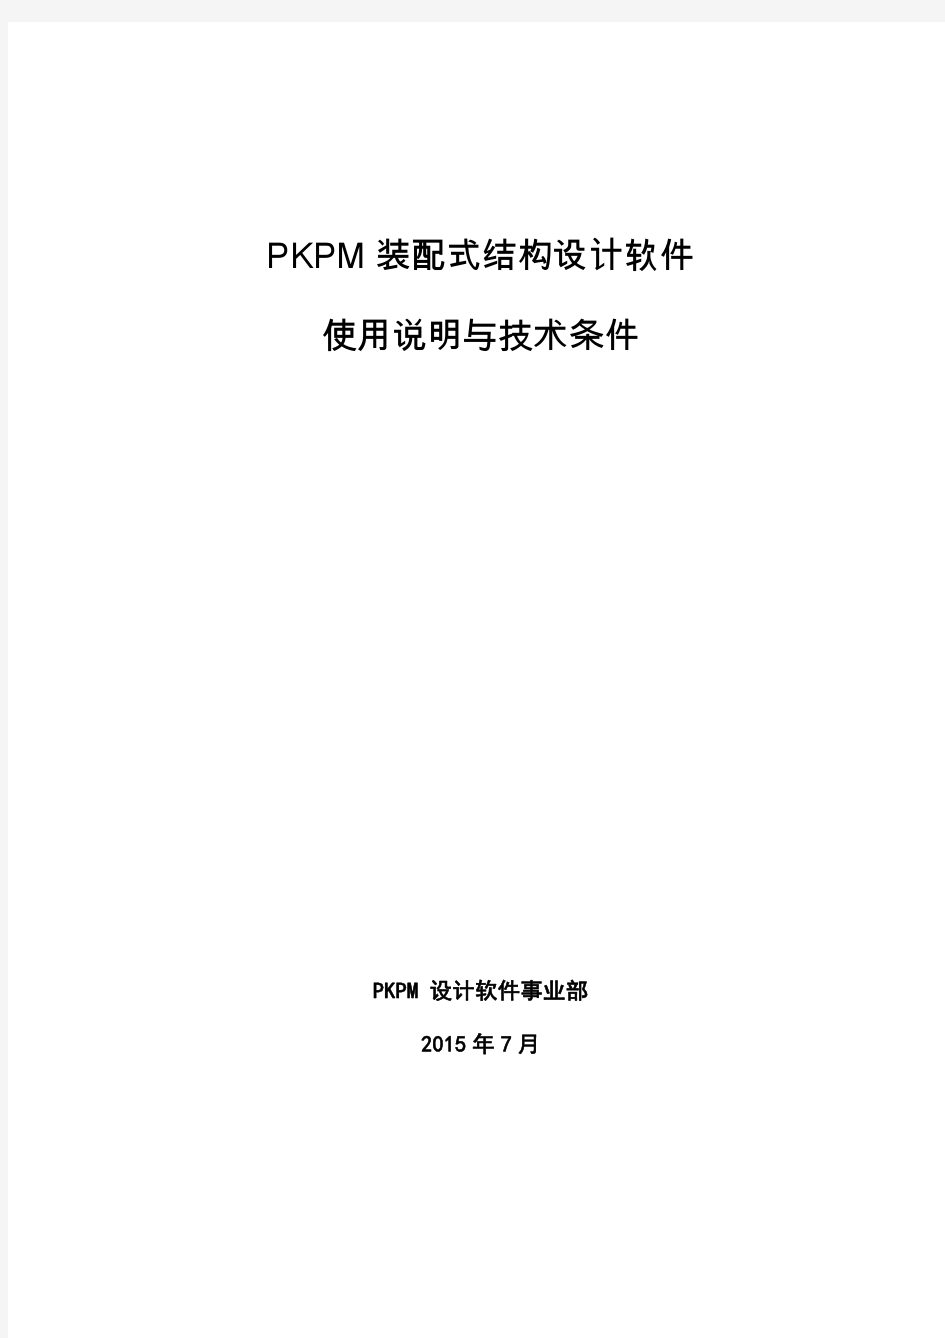 PKPM装配式结构设计软件使用说明与技术条件2015.7